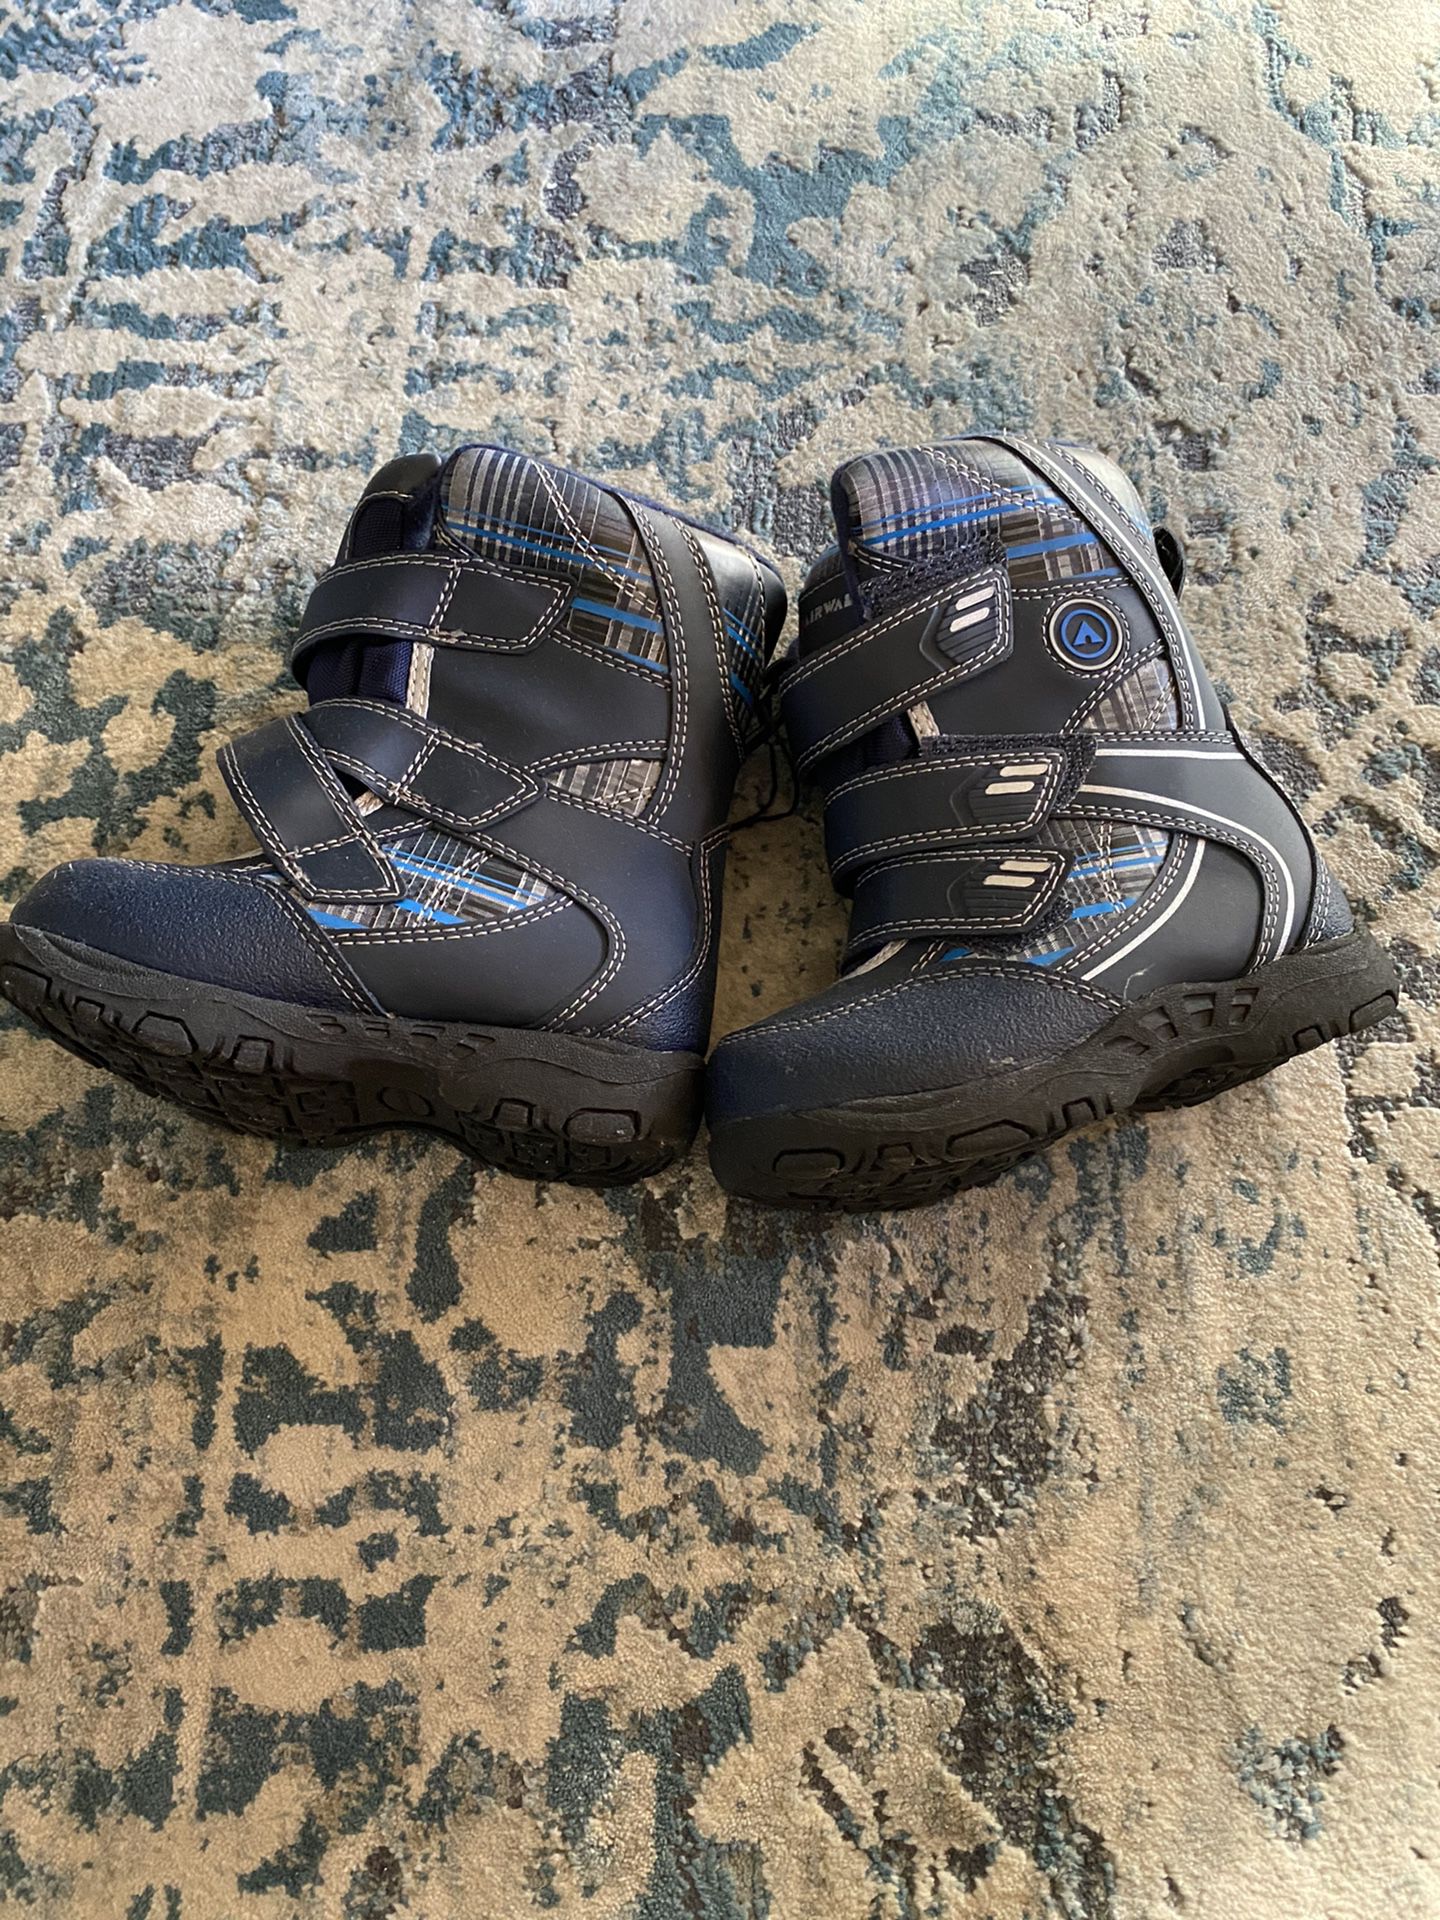 Airwalk Toddler snow boots (size 7)